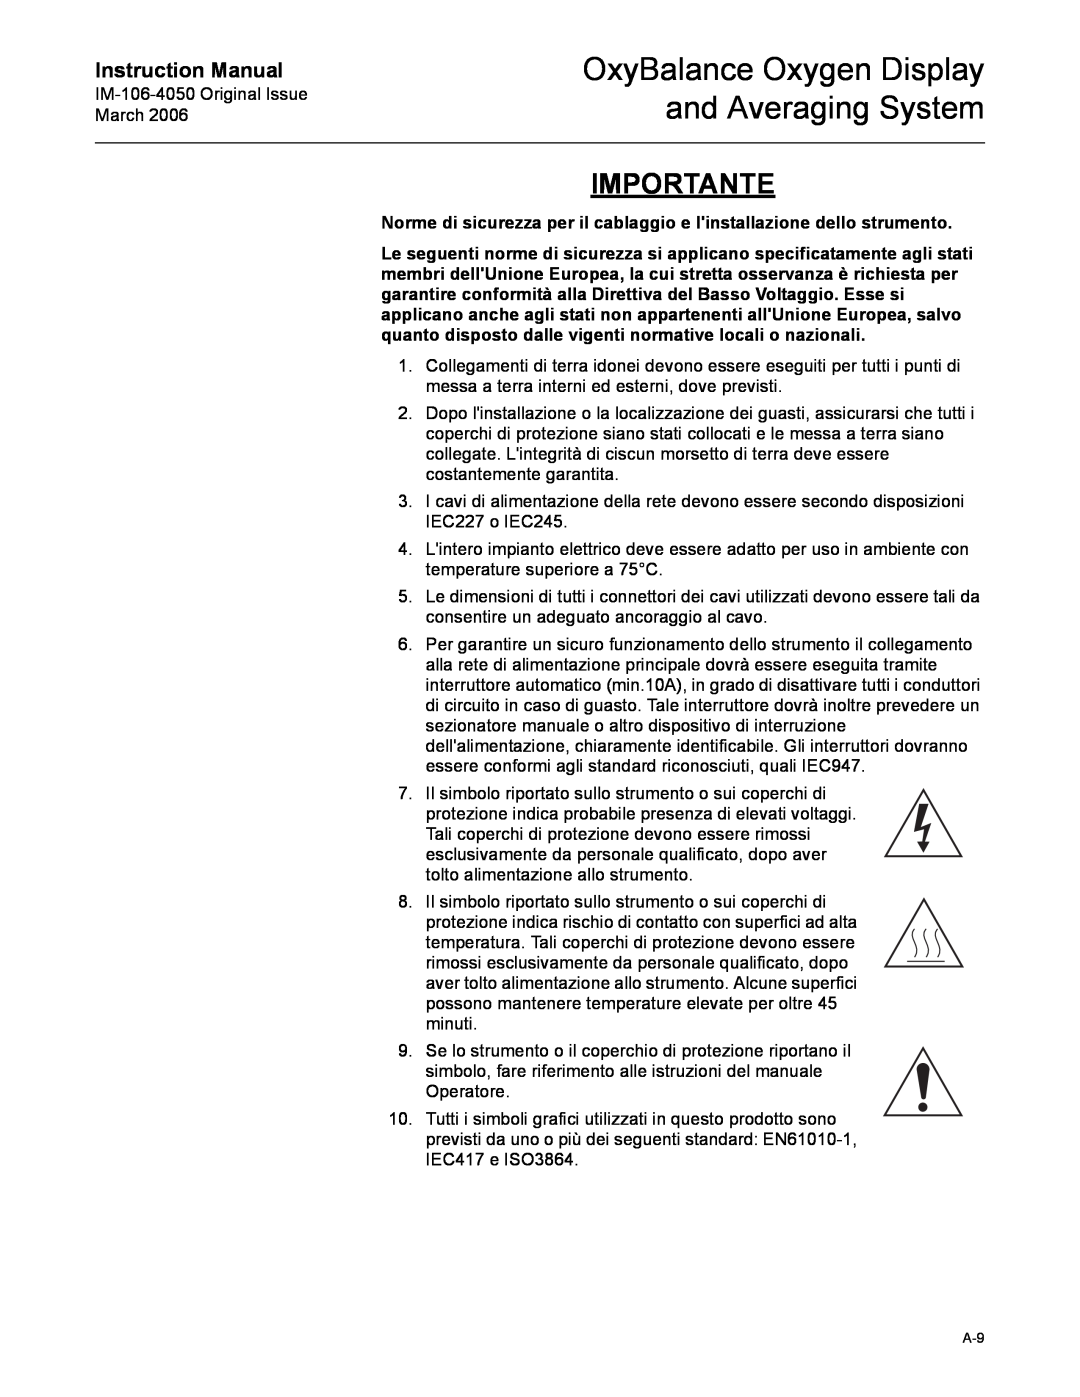 Emerson IM-106-4050 Importante, Norme di sicurezza per il cablaggio e linstallazione dello strumento, Instruction Manual 